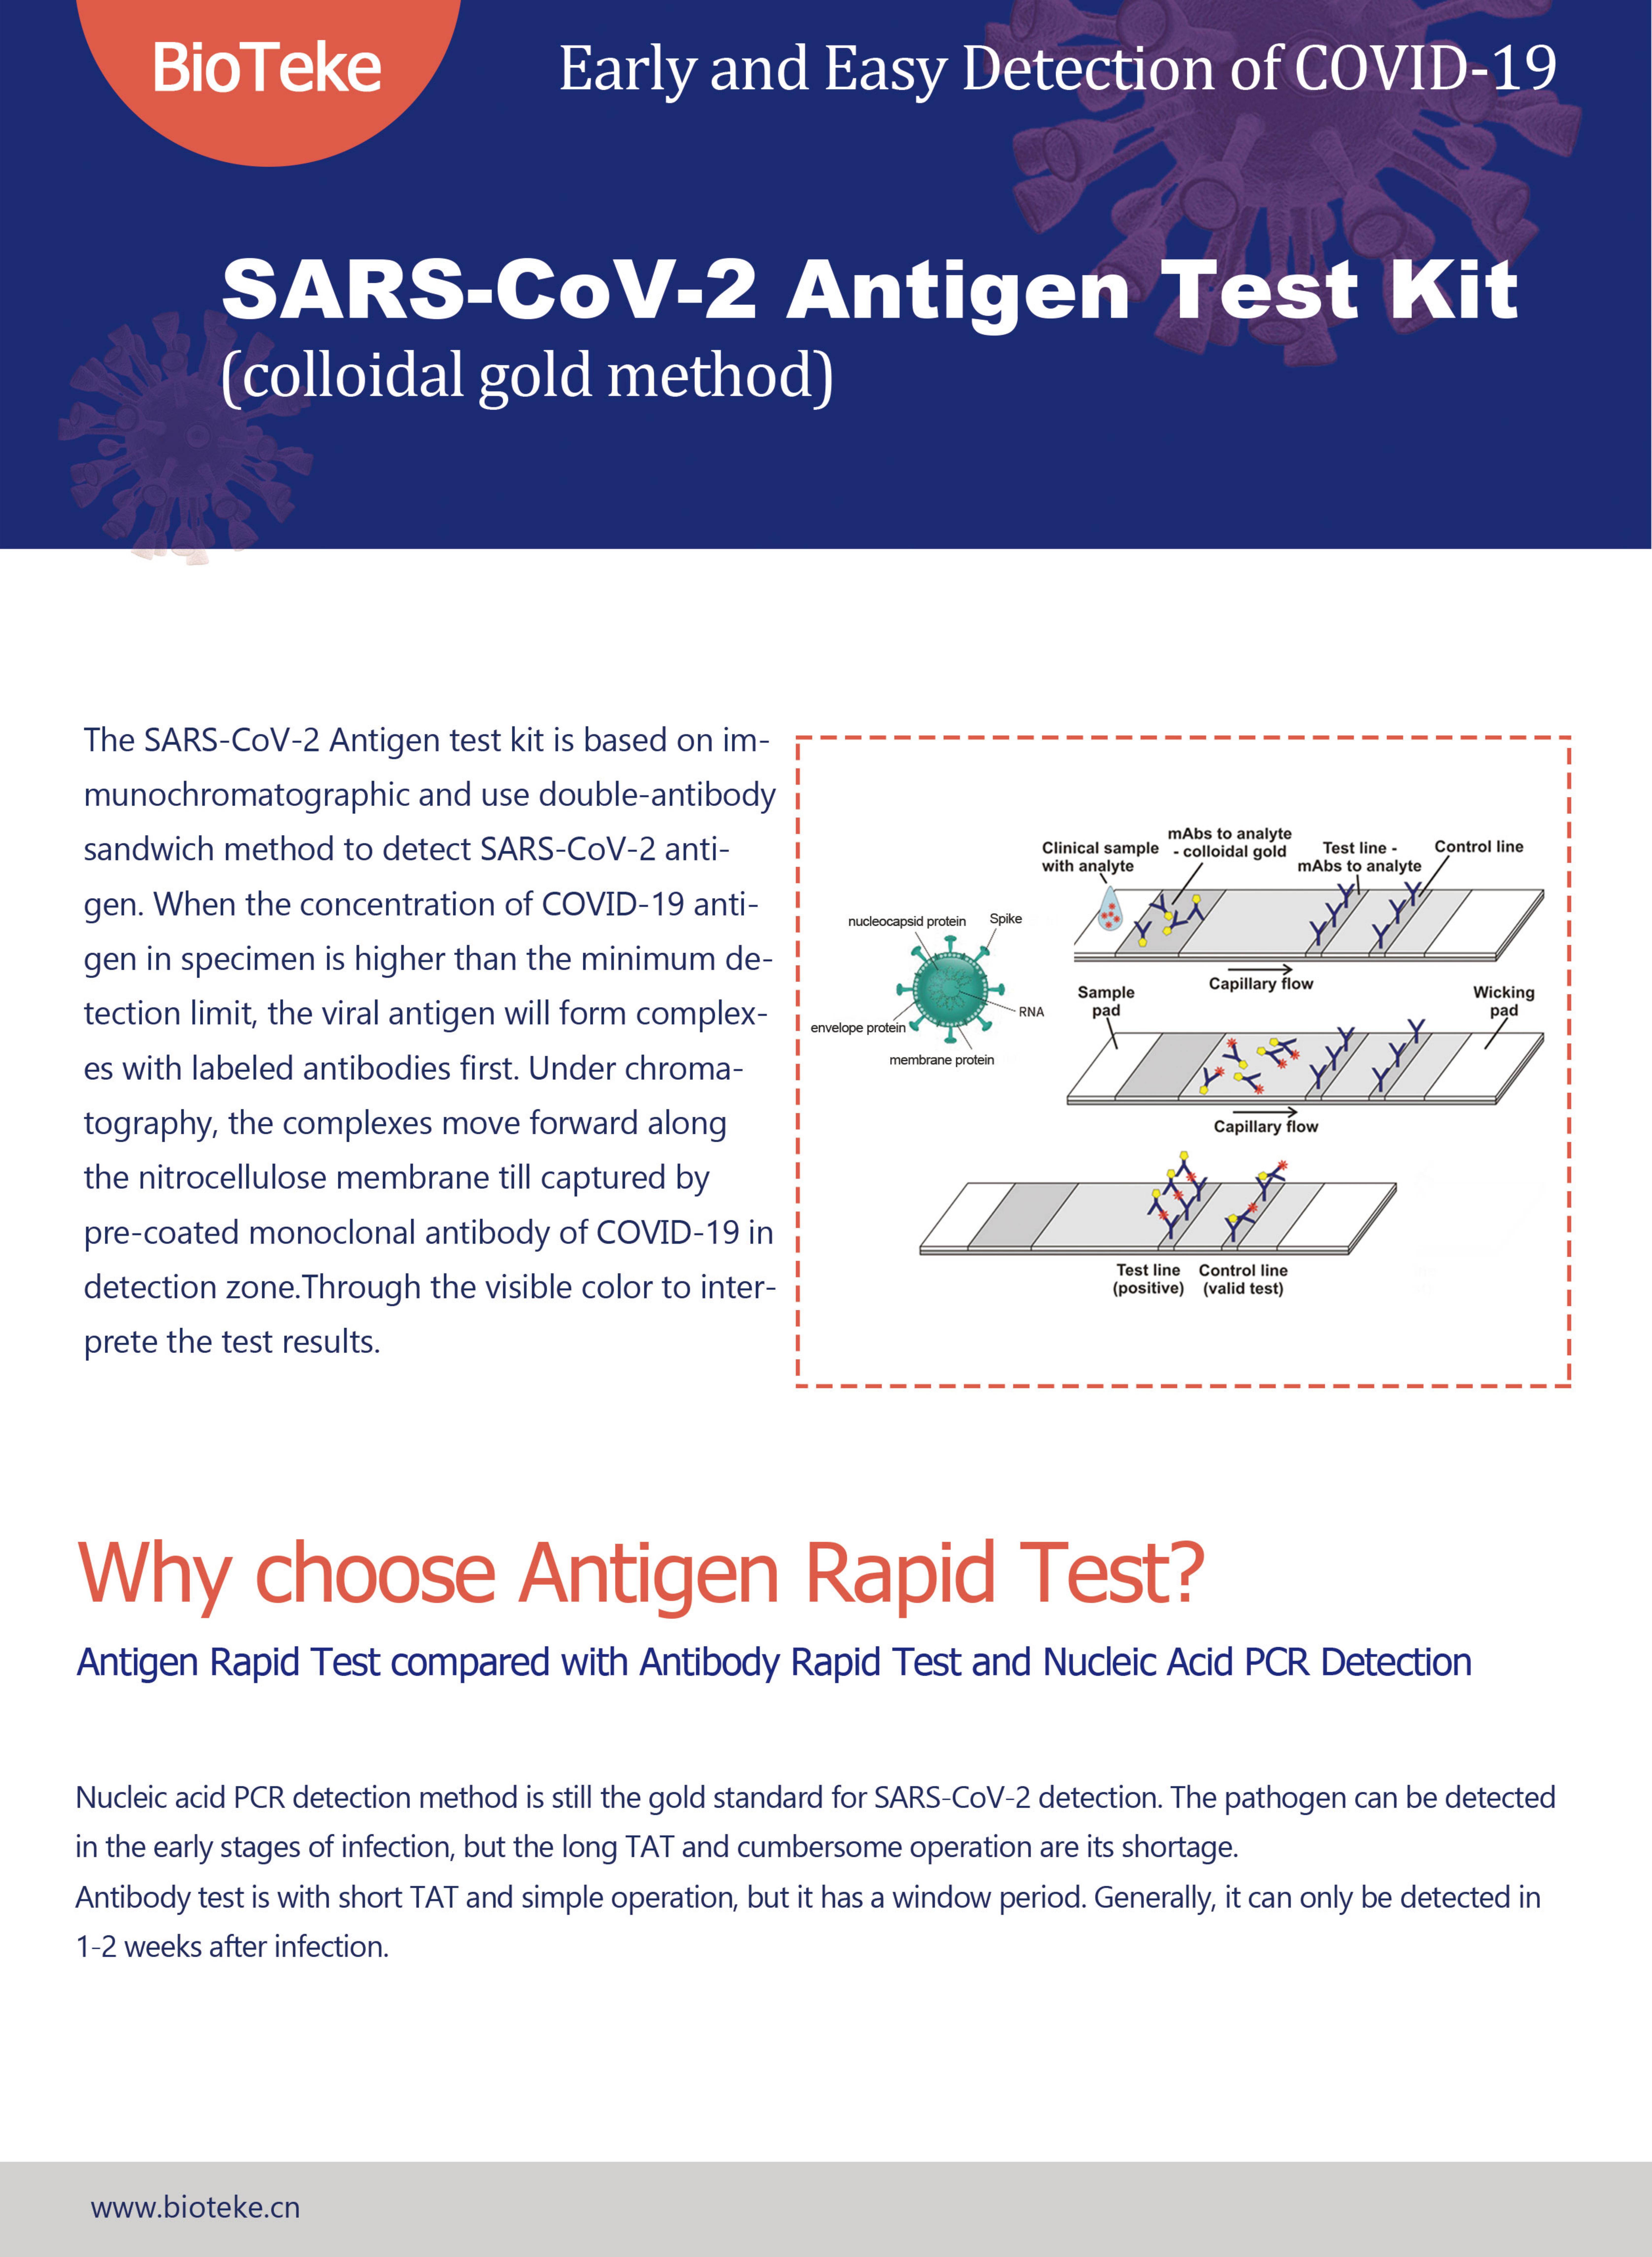 Kit de prueba de antígeno-Bioteke (2021.3.16) _00